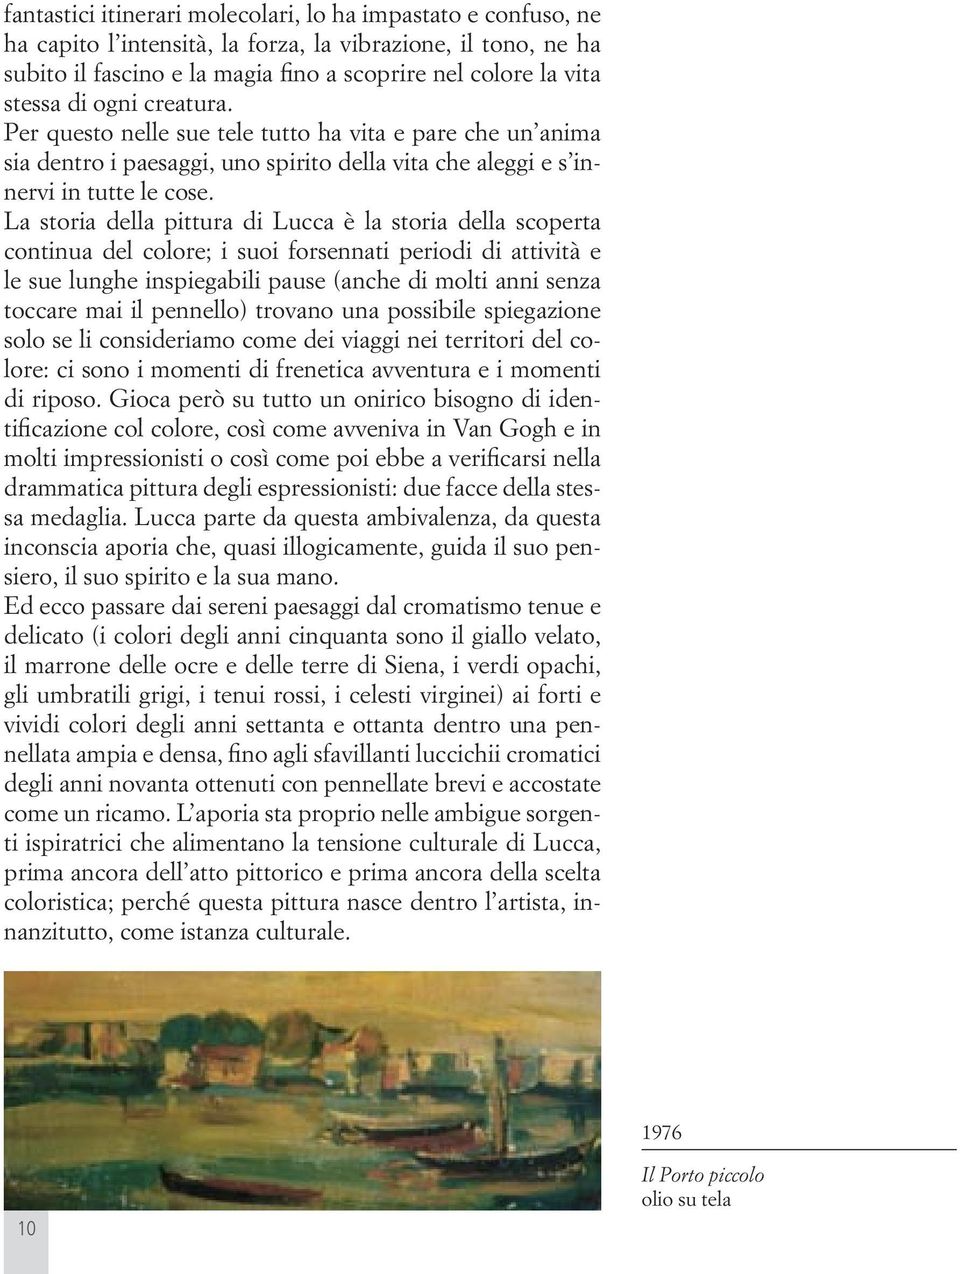 La storia della pittura di Lucca è la storia della scoperta continua del colore; i suoi forsennati periodi di attività e le sue lunghe inspiegabili pause (anche di molti anni senza toccare mai il